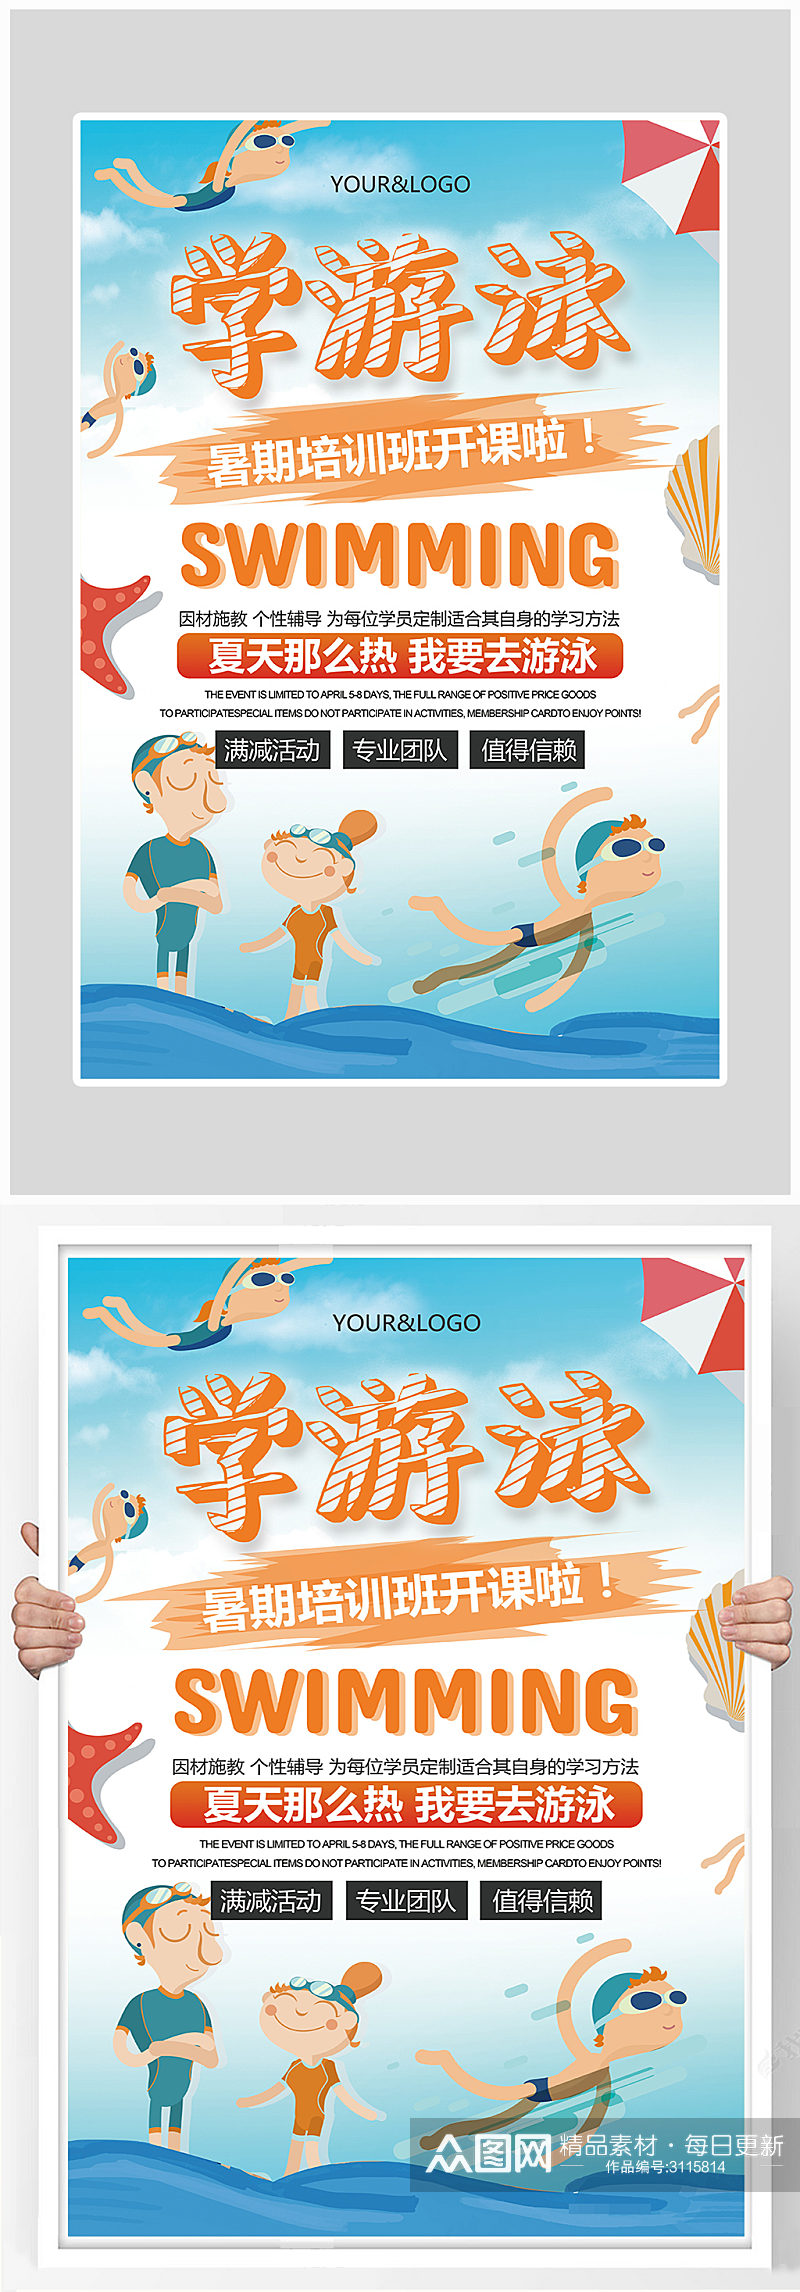 创意简约暑假游泳培训海报设计素材